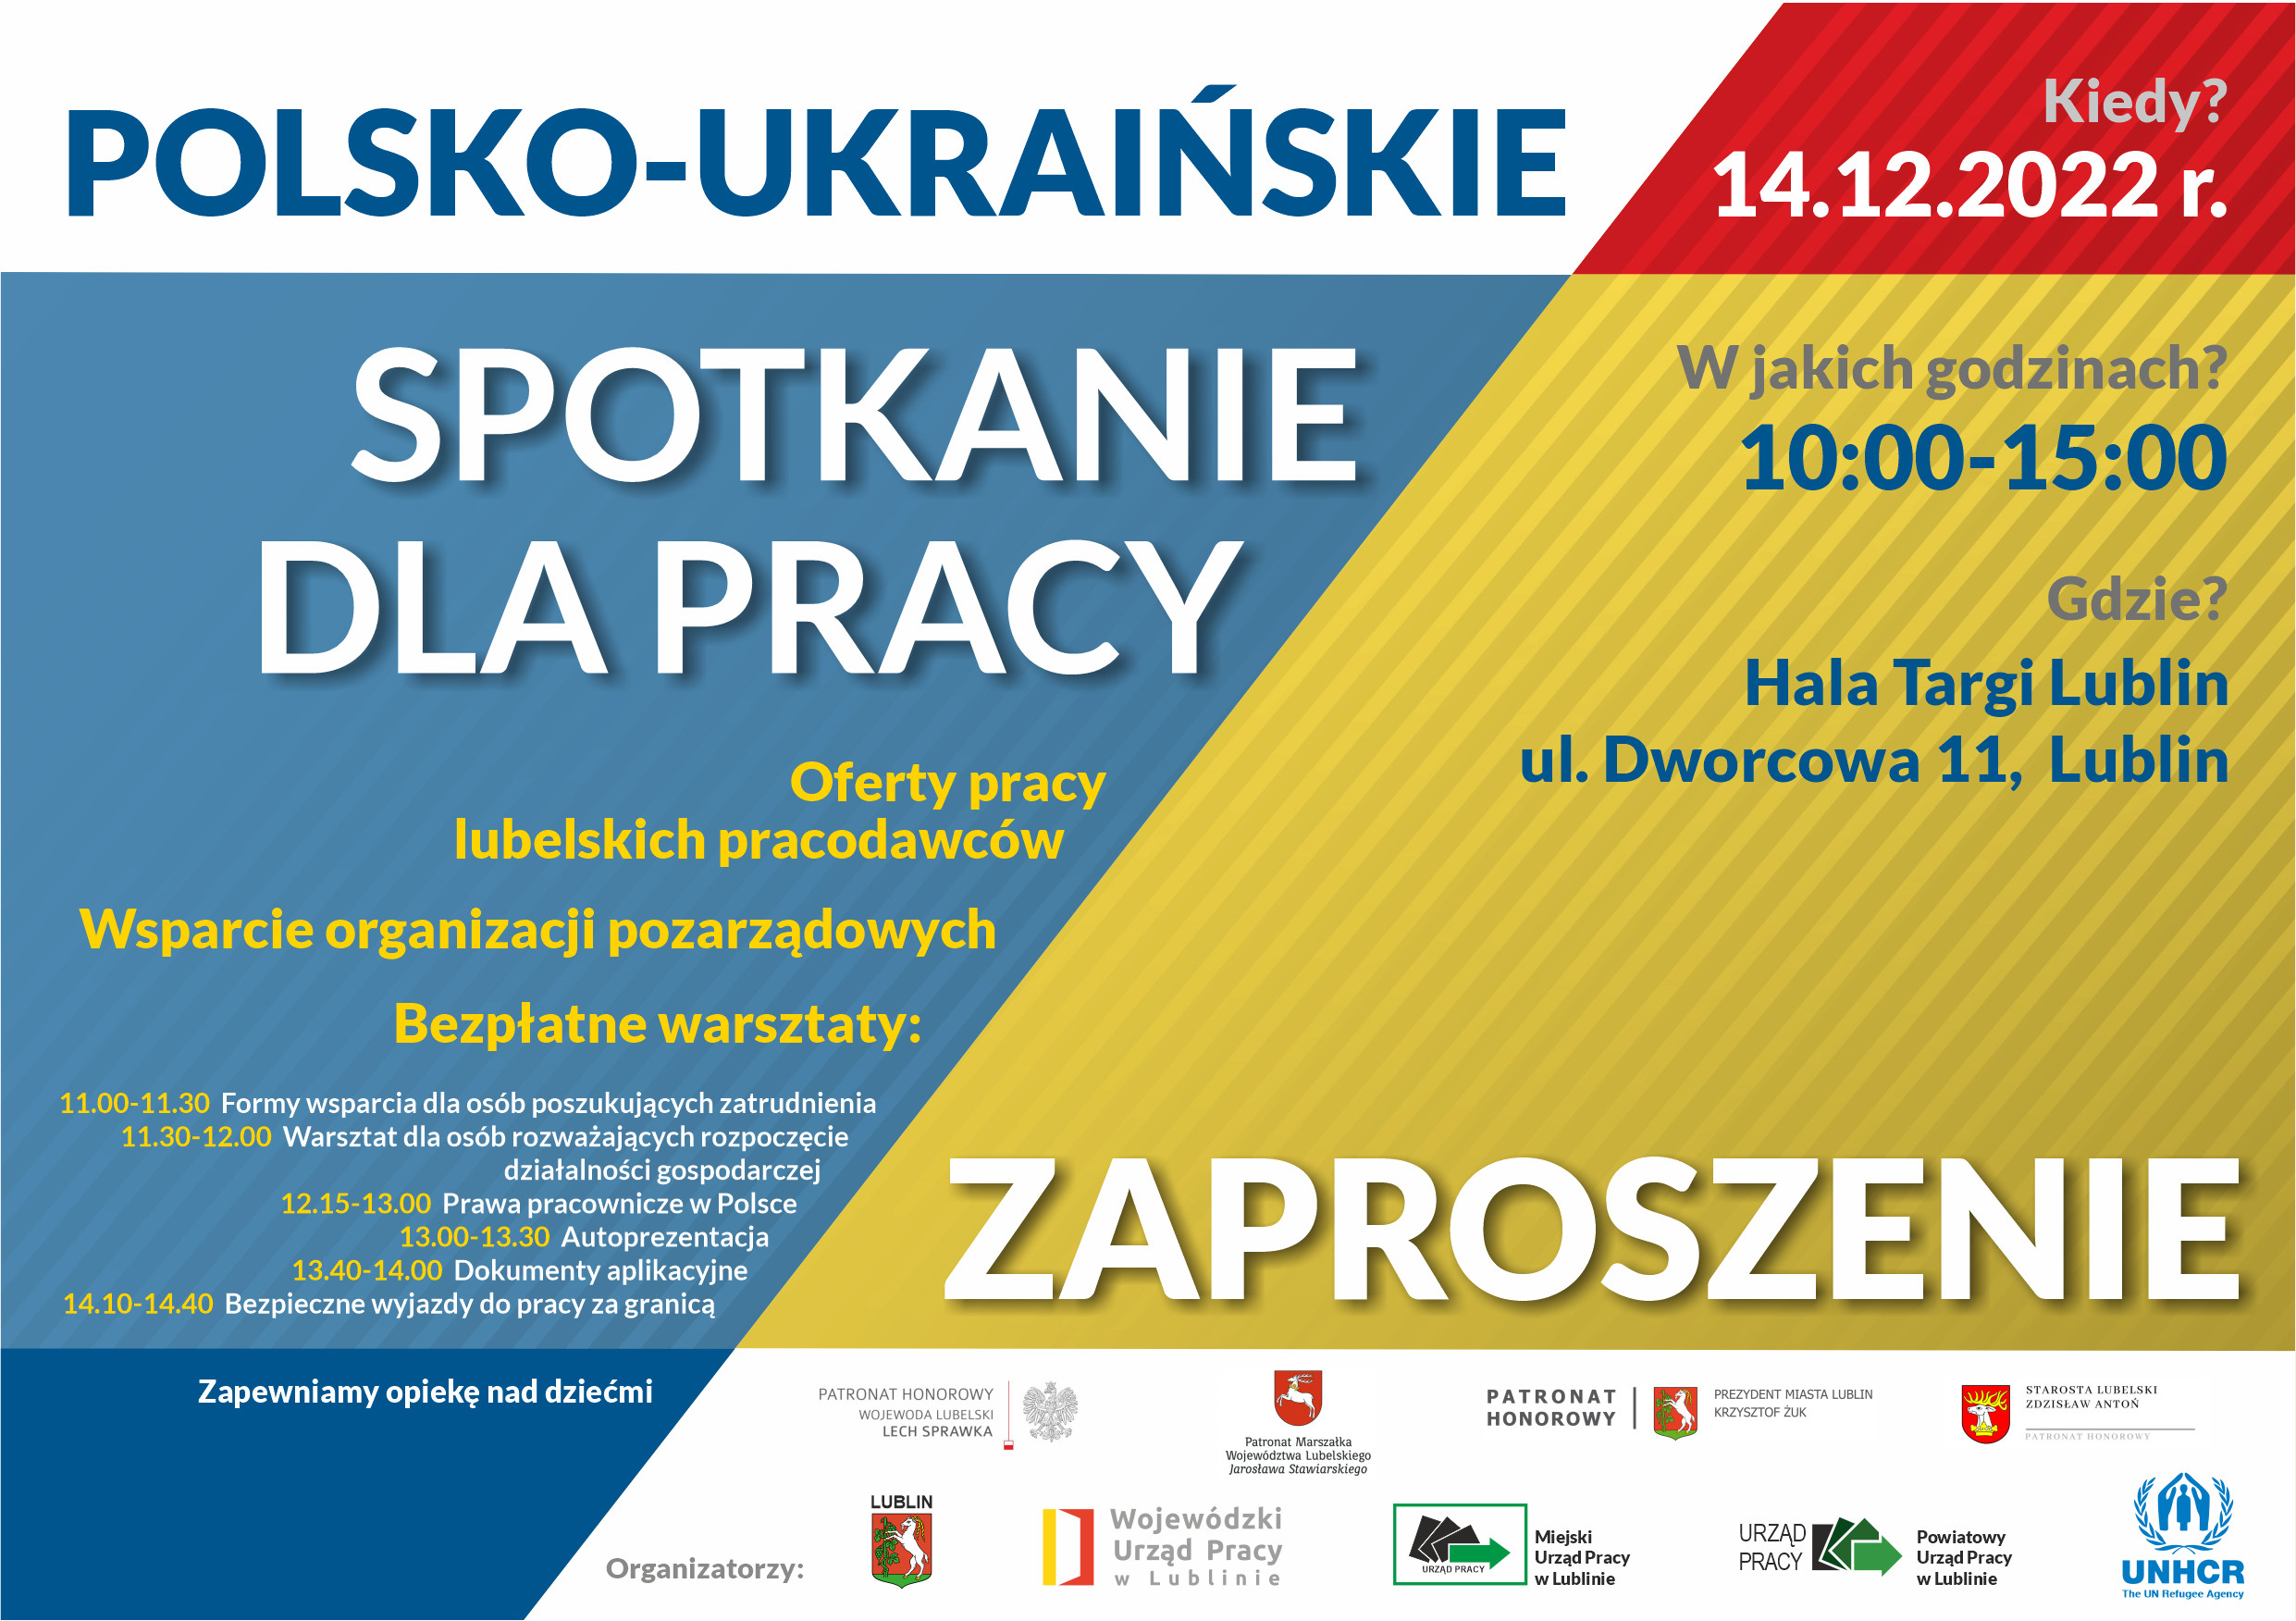 1Zaproszenie A5 Polsko-Ukraińskie Spotkanie dla Pracy MAIL.jpg (877,54 kB)